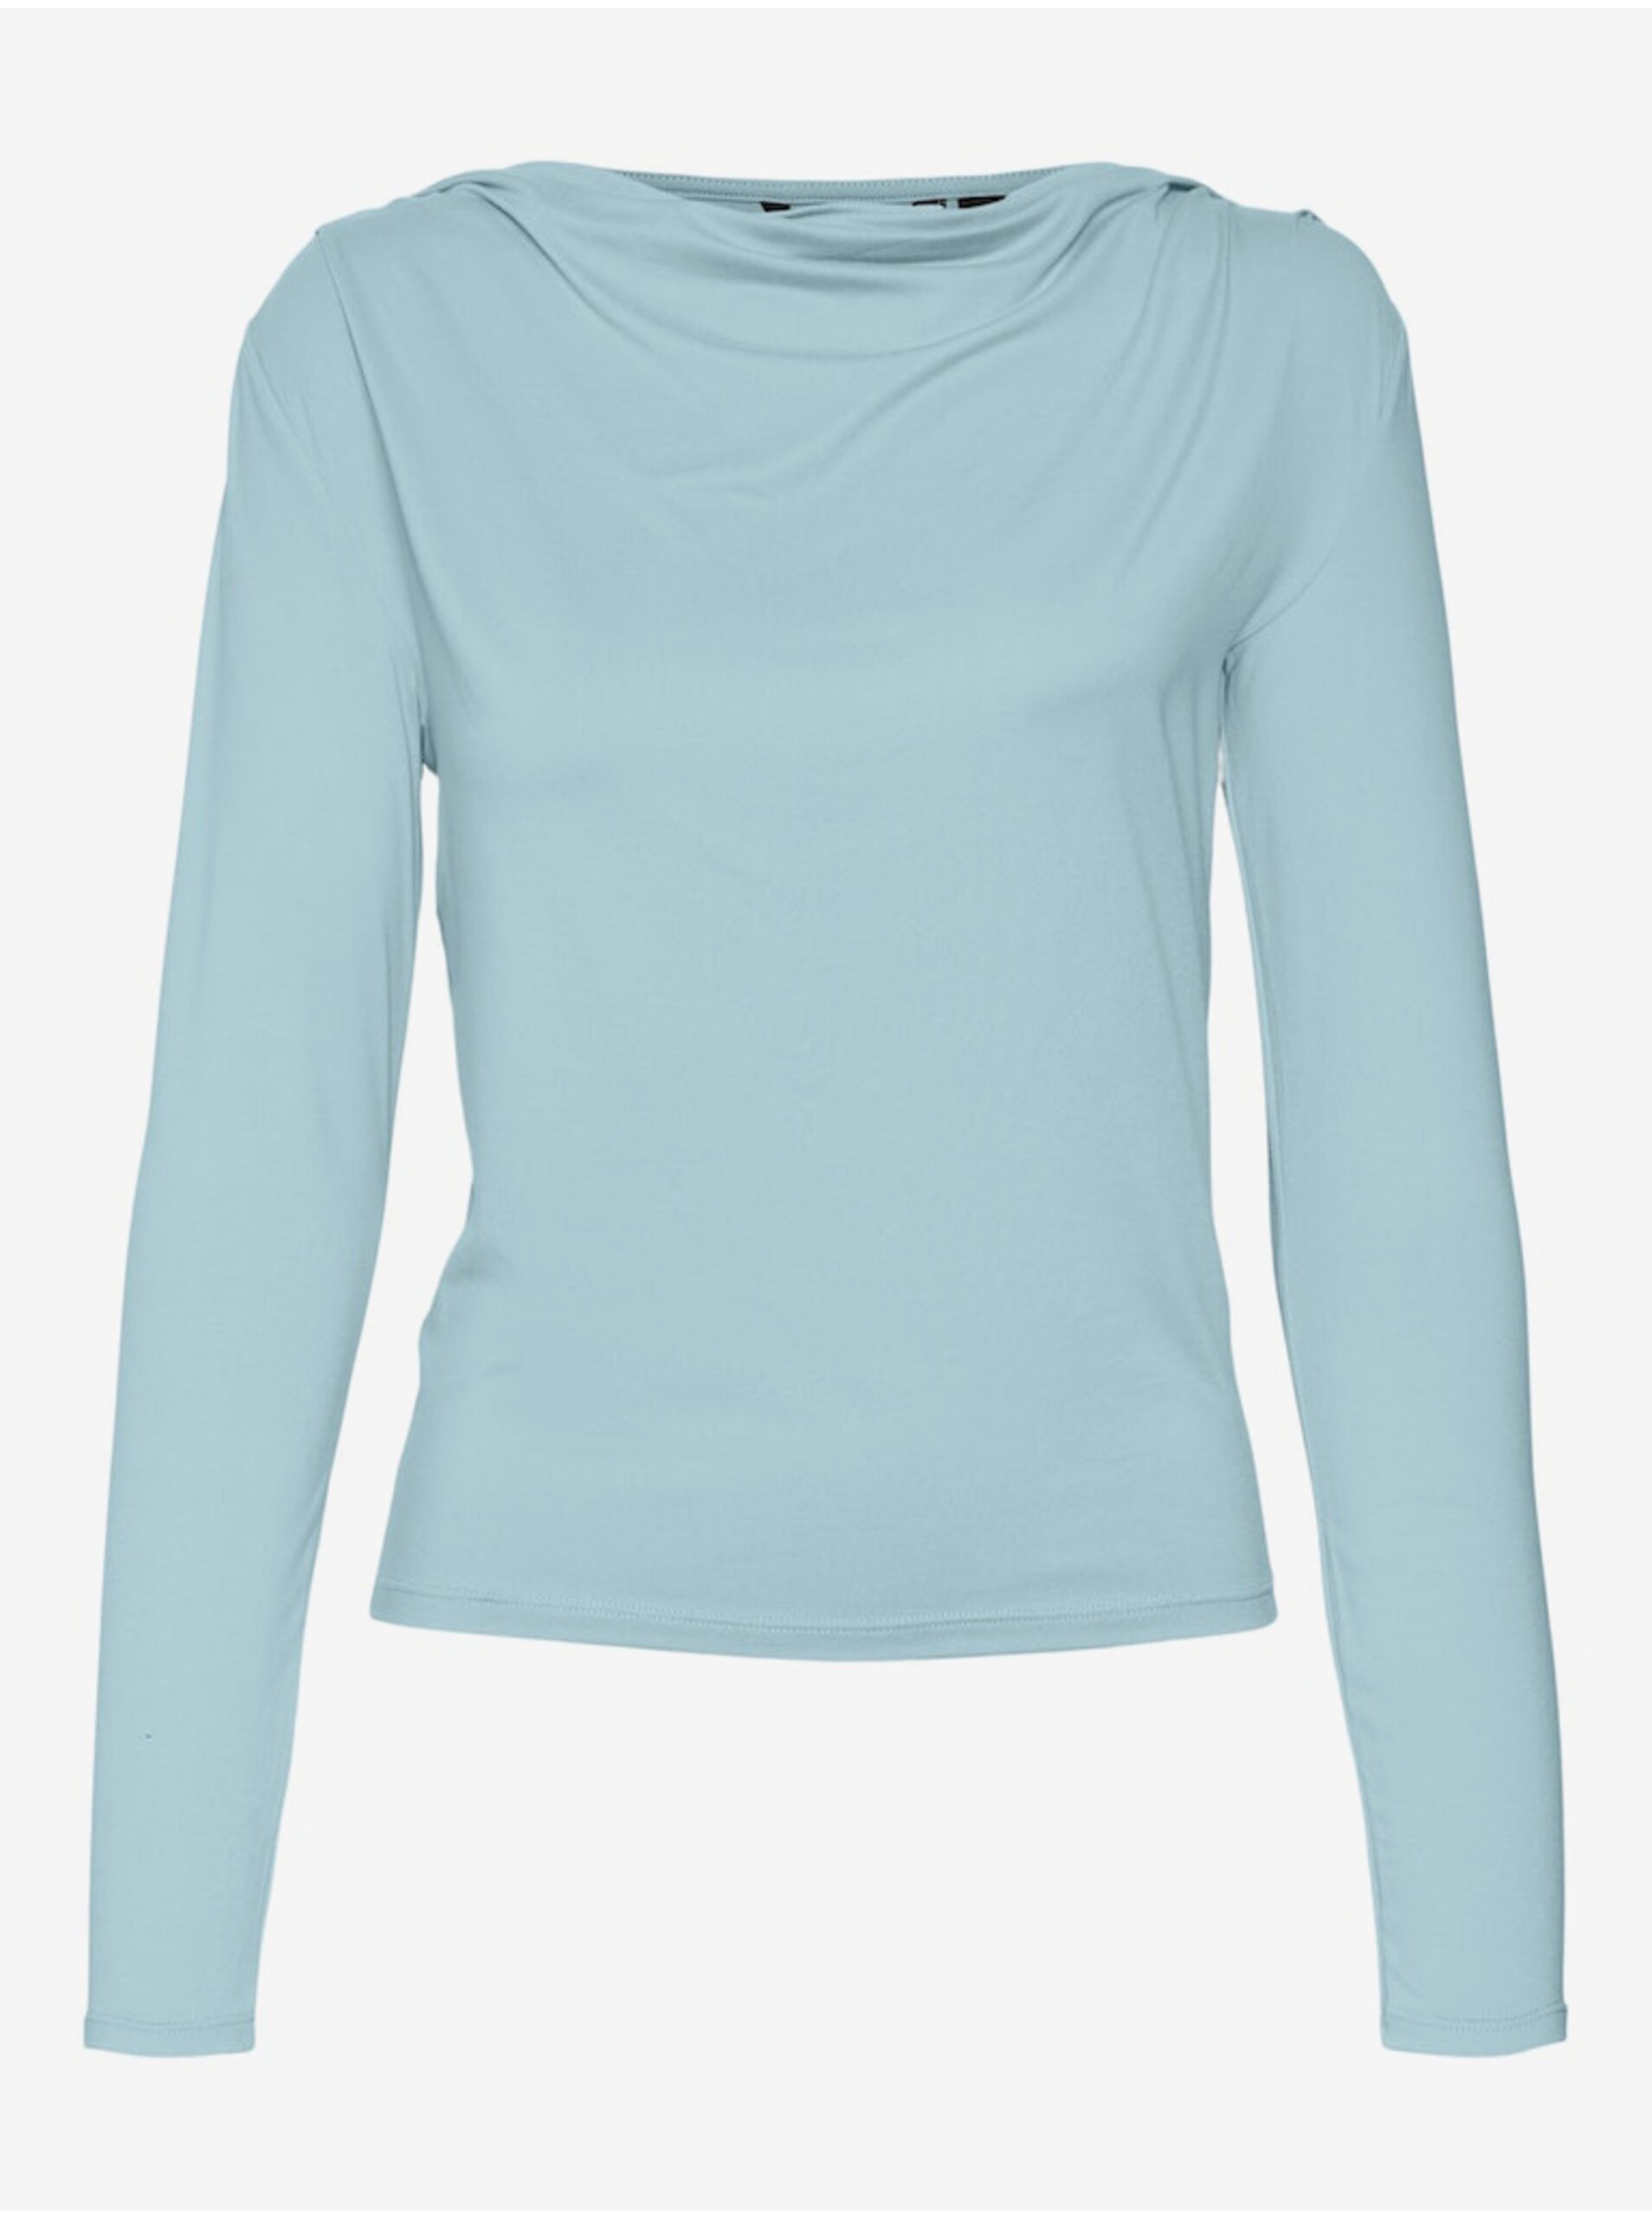 Světle modré dámské tričko Vero Moda Carol - Dámské